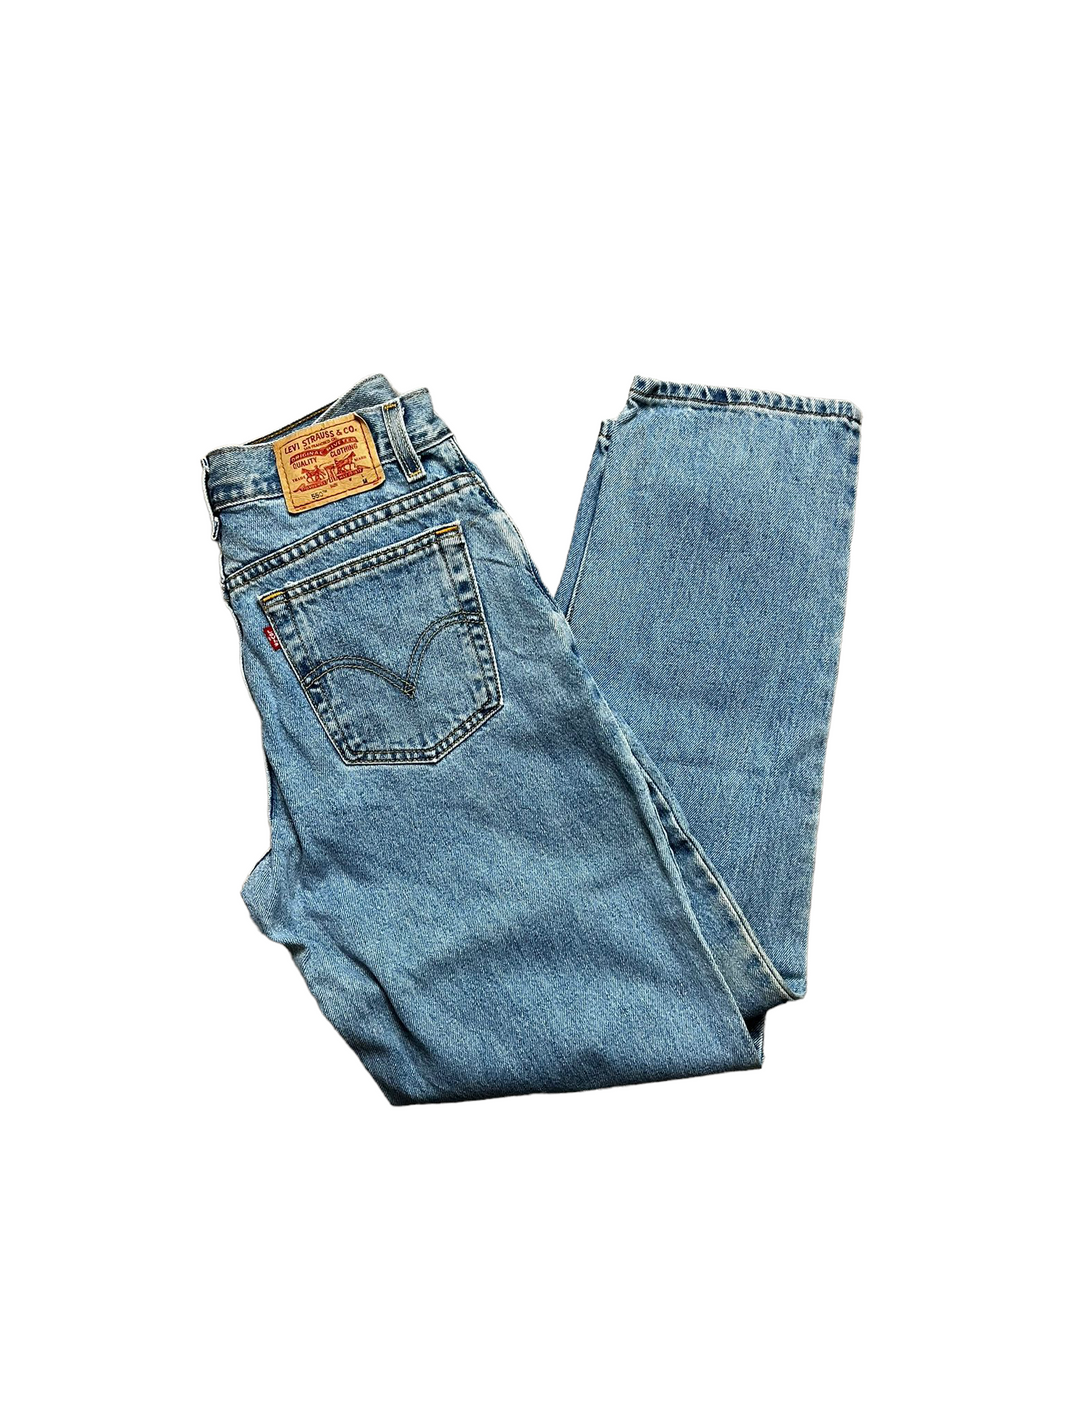 Levi’s 550 Jeans